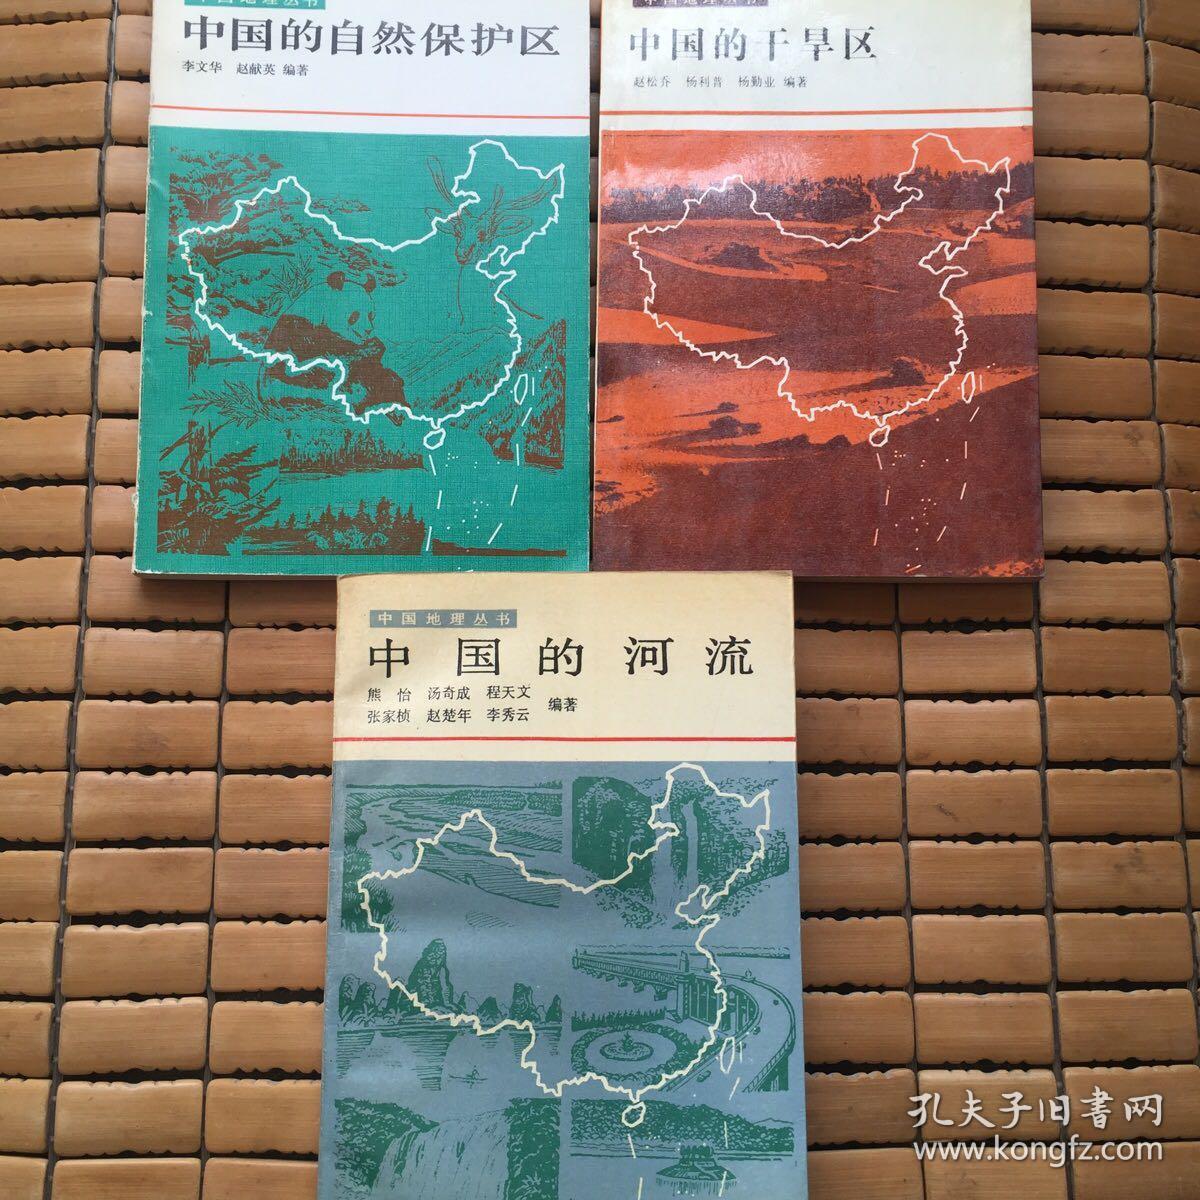 中国地理丛书、中国的干旱区、中国的河流、中国的自然保护区3本合售